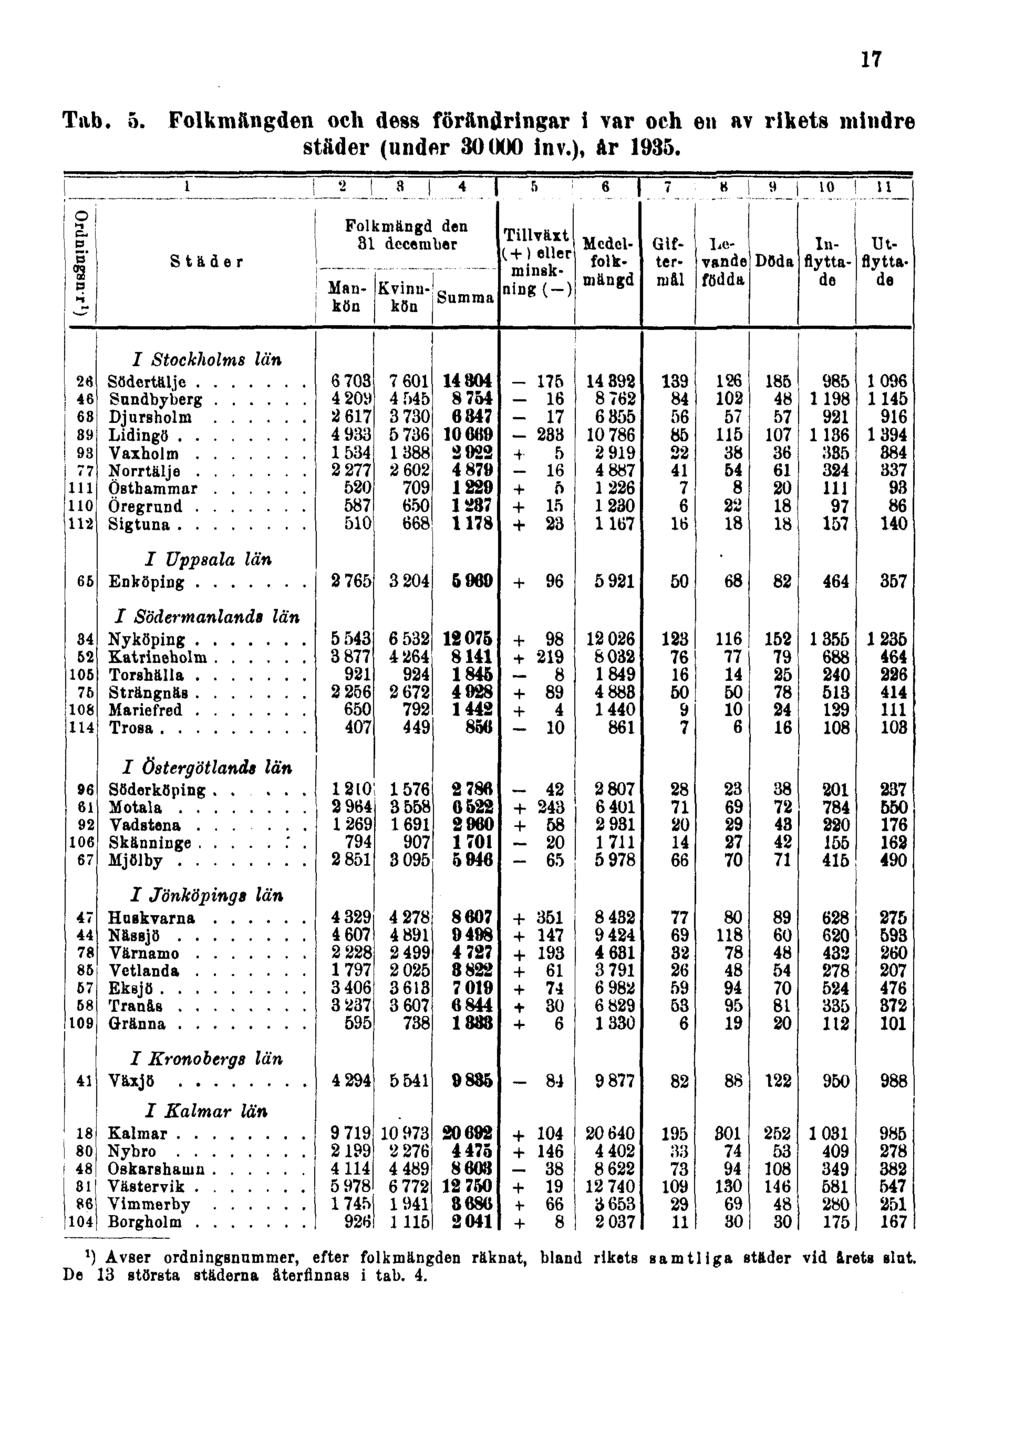 Tab. 5. Folkmängden och dess förändringar i var och en av rikets mindre städer (under 30000 inv.), år 1935.